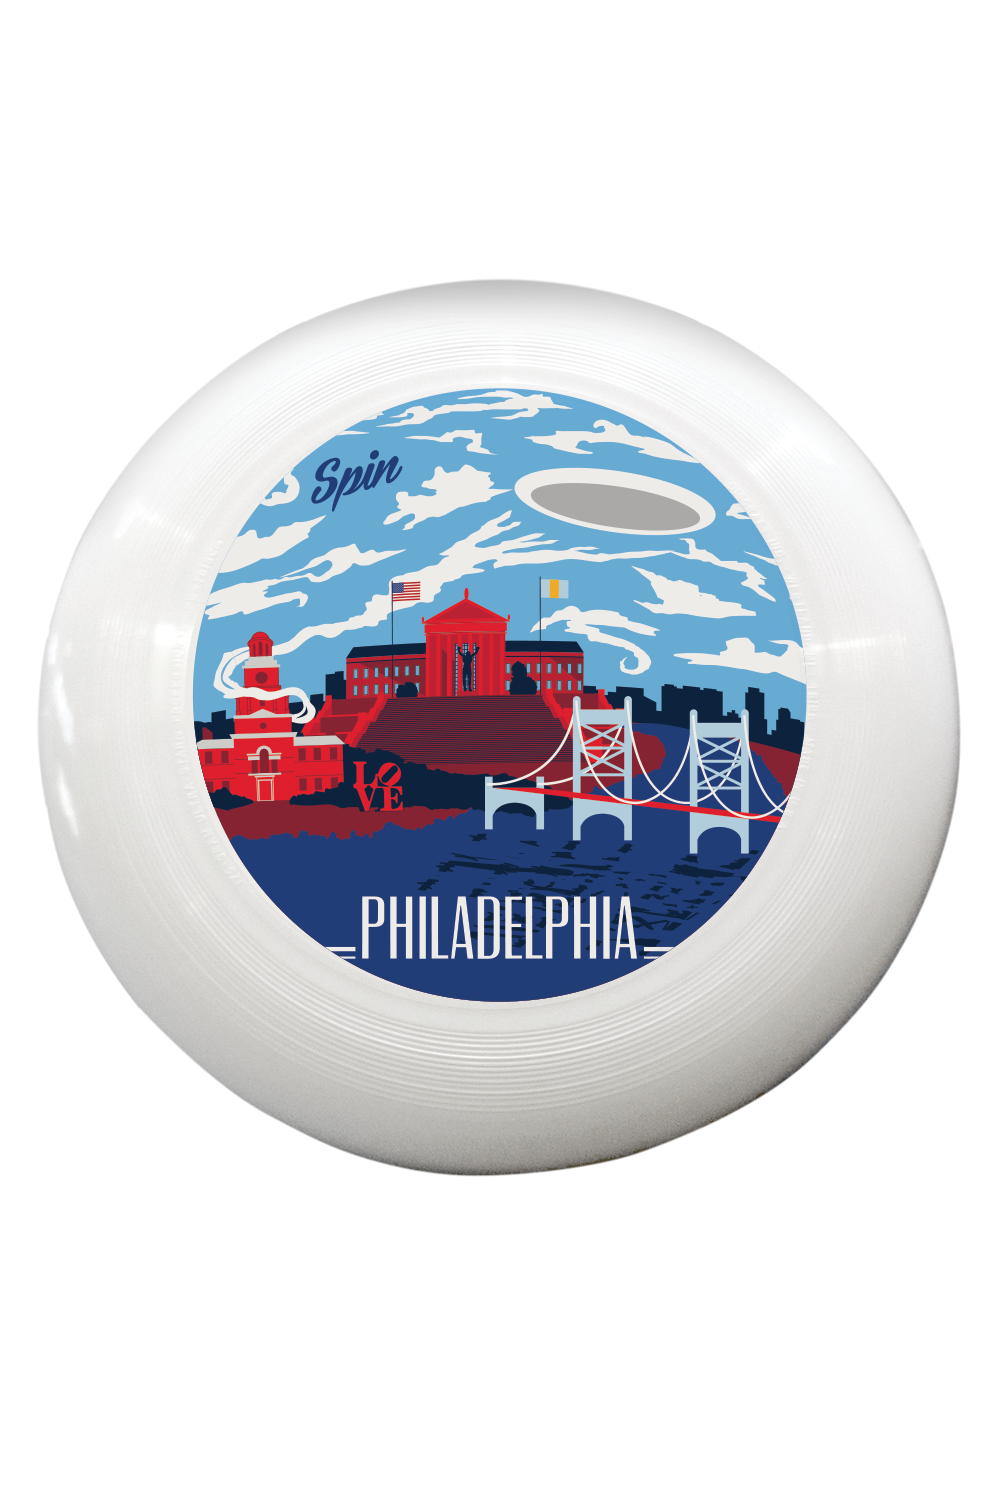 Philadelphia Disc